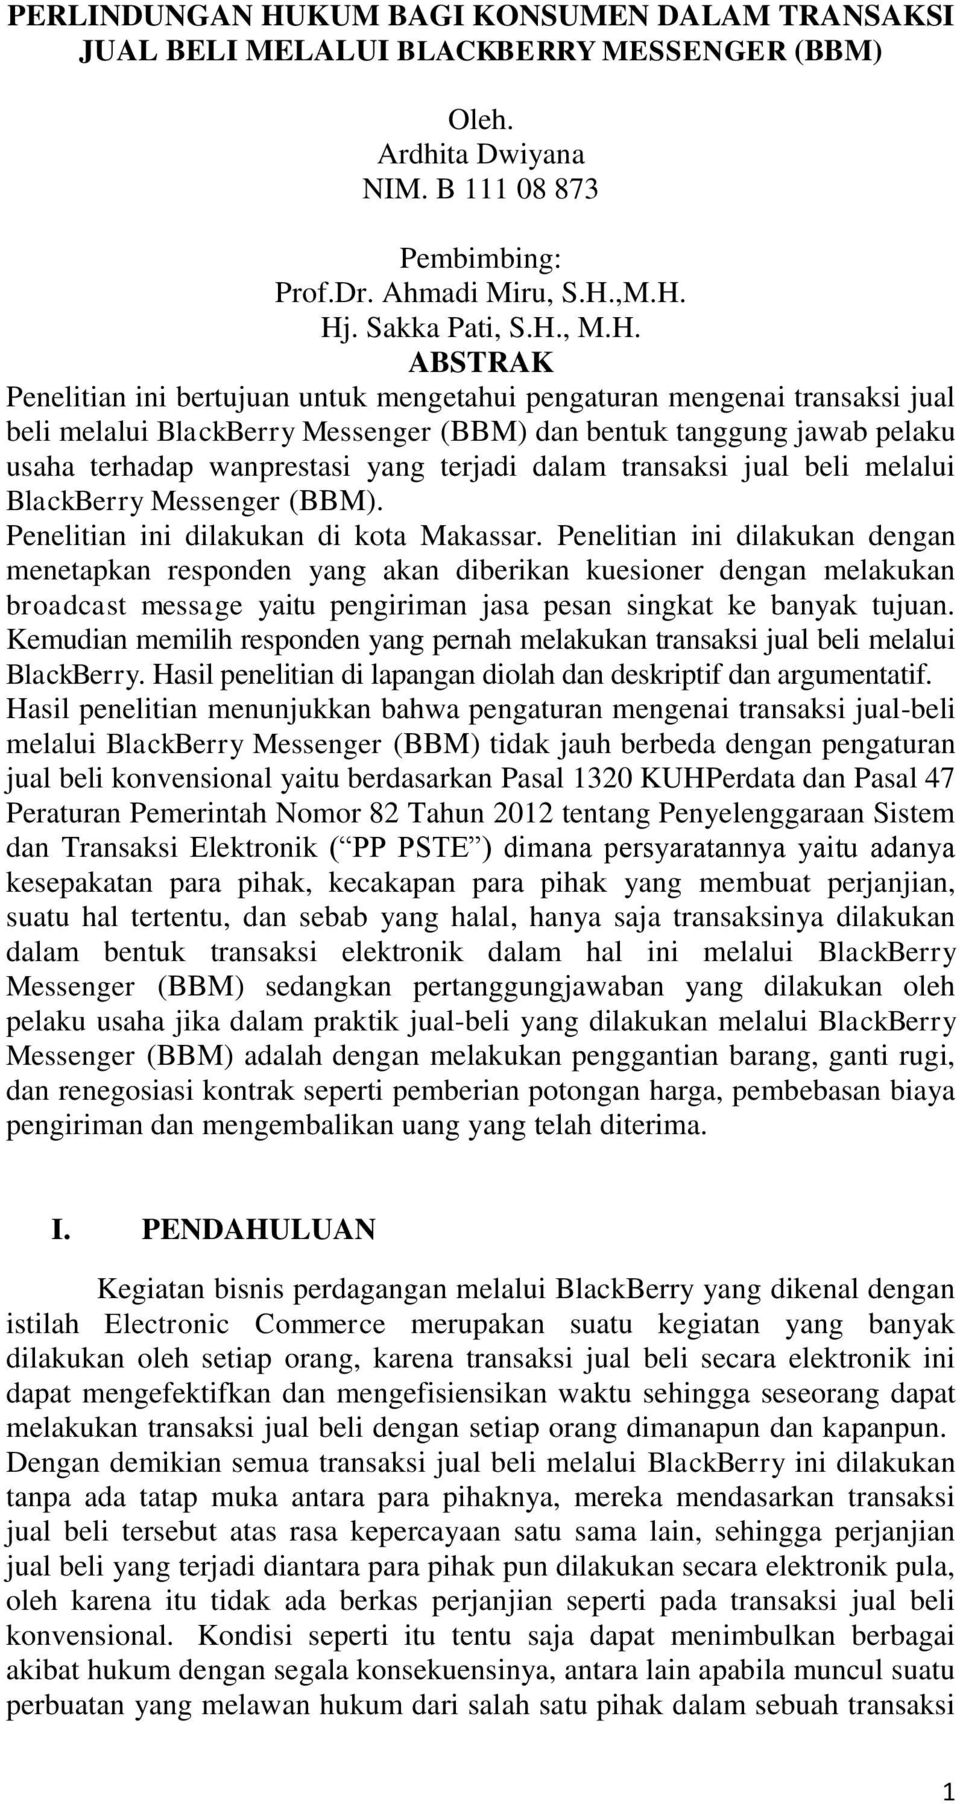 terjadi dalam transaksi jual beli melalui BlackBerry Messenger (BBM). Penelitian ini dilakukan di kota Makassar.